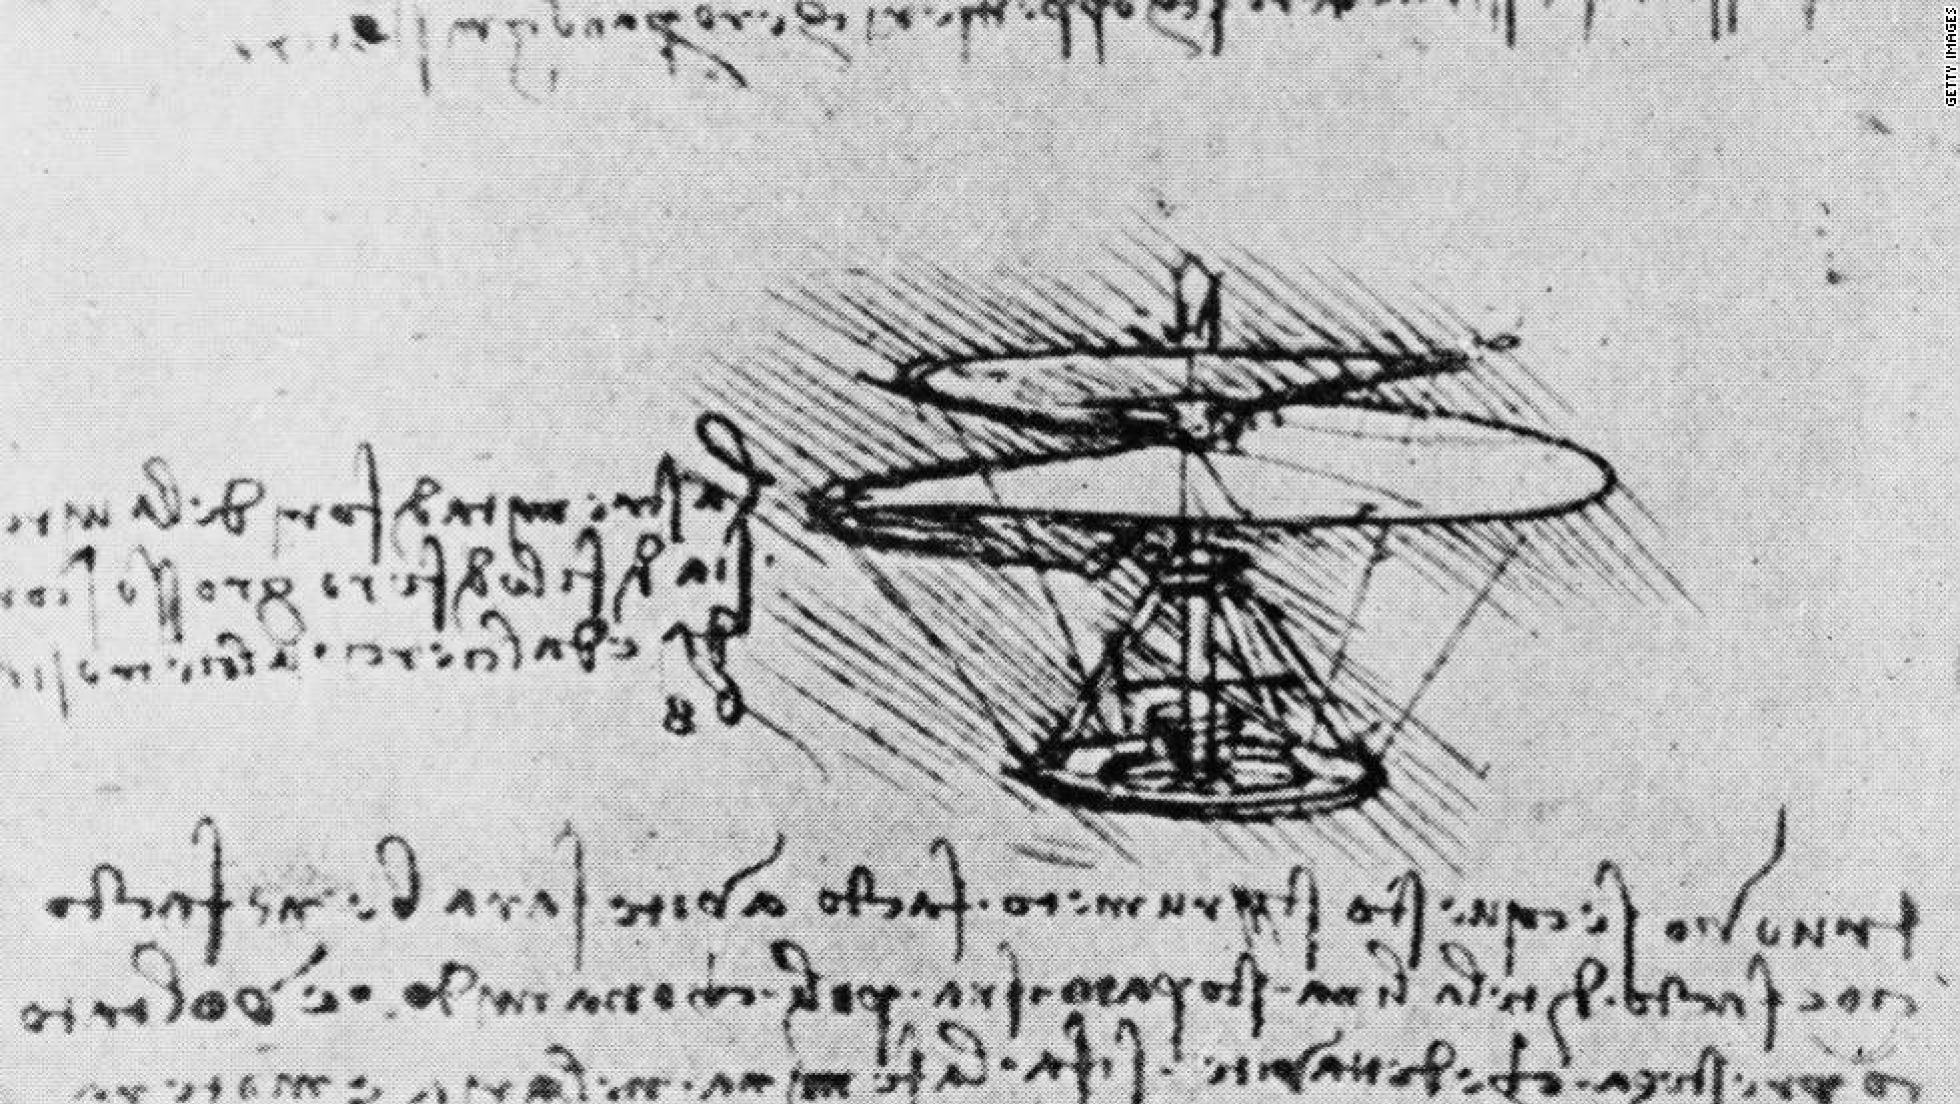 Da Vinci Helicopter Sketch Best Image